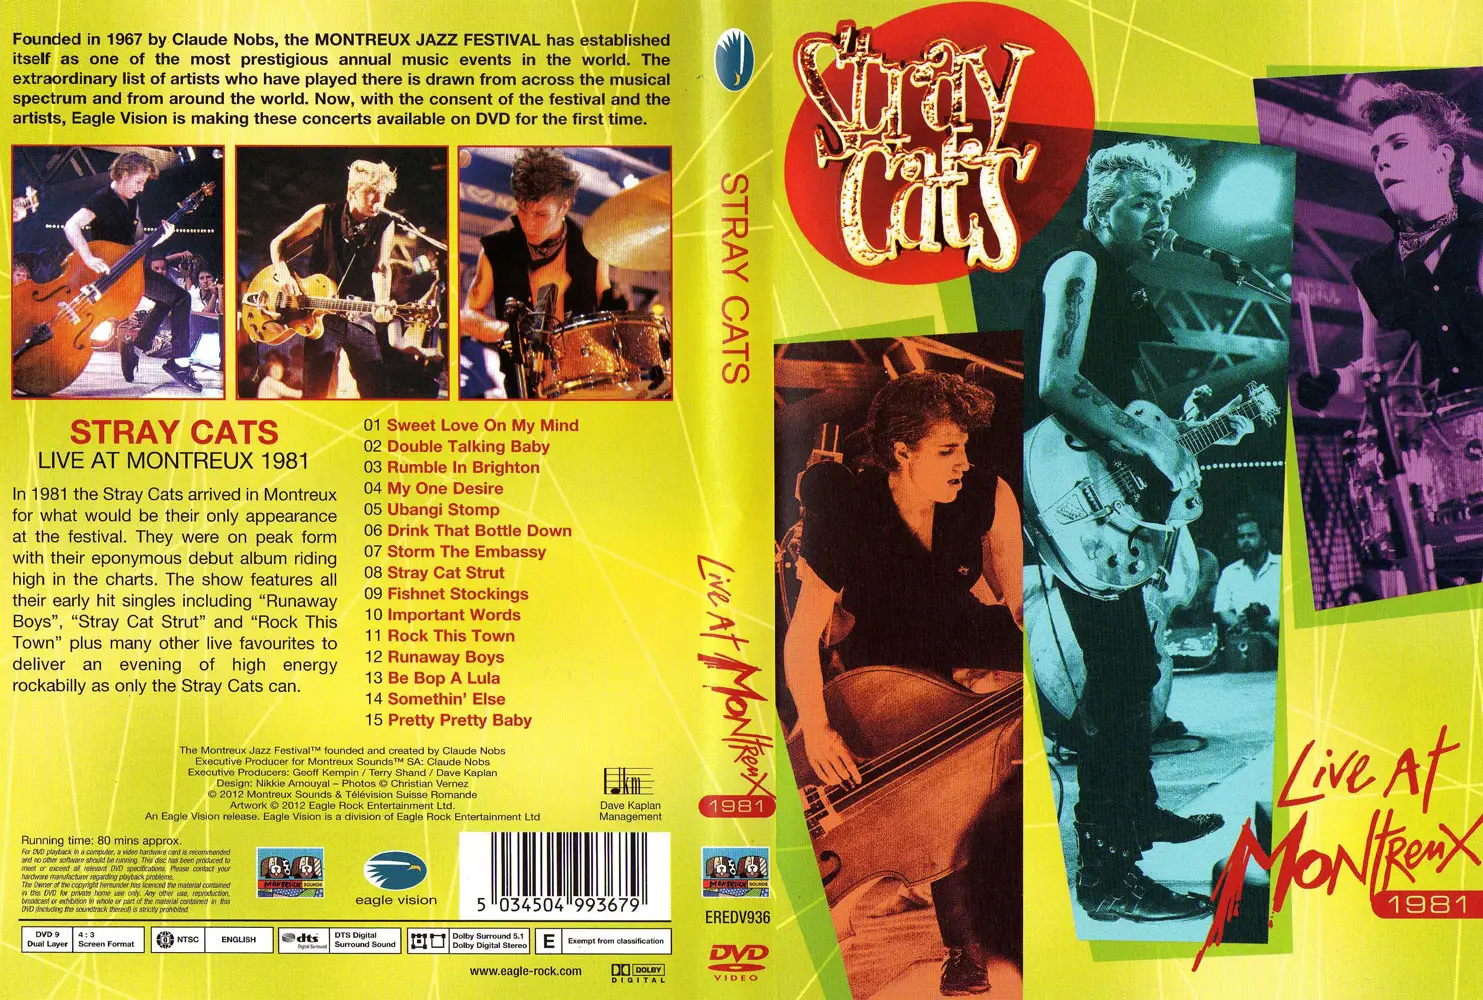 Stray cats ubangi stomp. Stray Cats 1981. Stray Cats альбом 1981. Stray Cats album 1981 обложка. Stray Cat обложка.